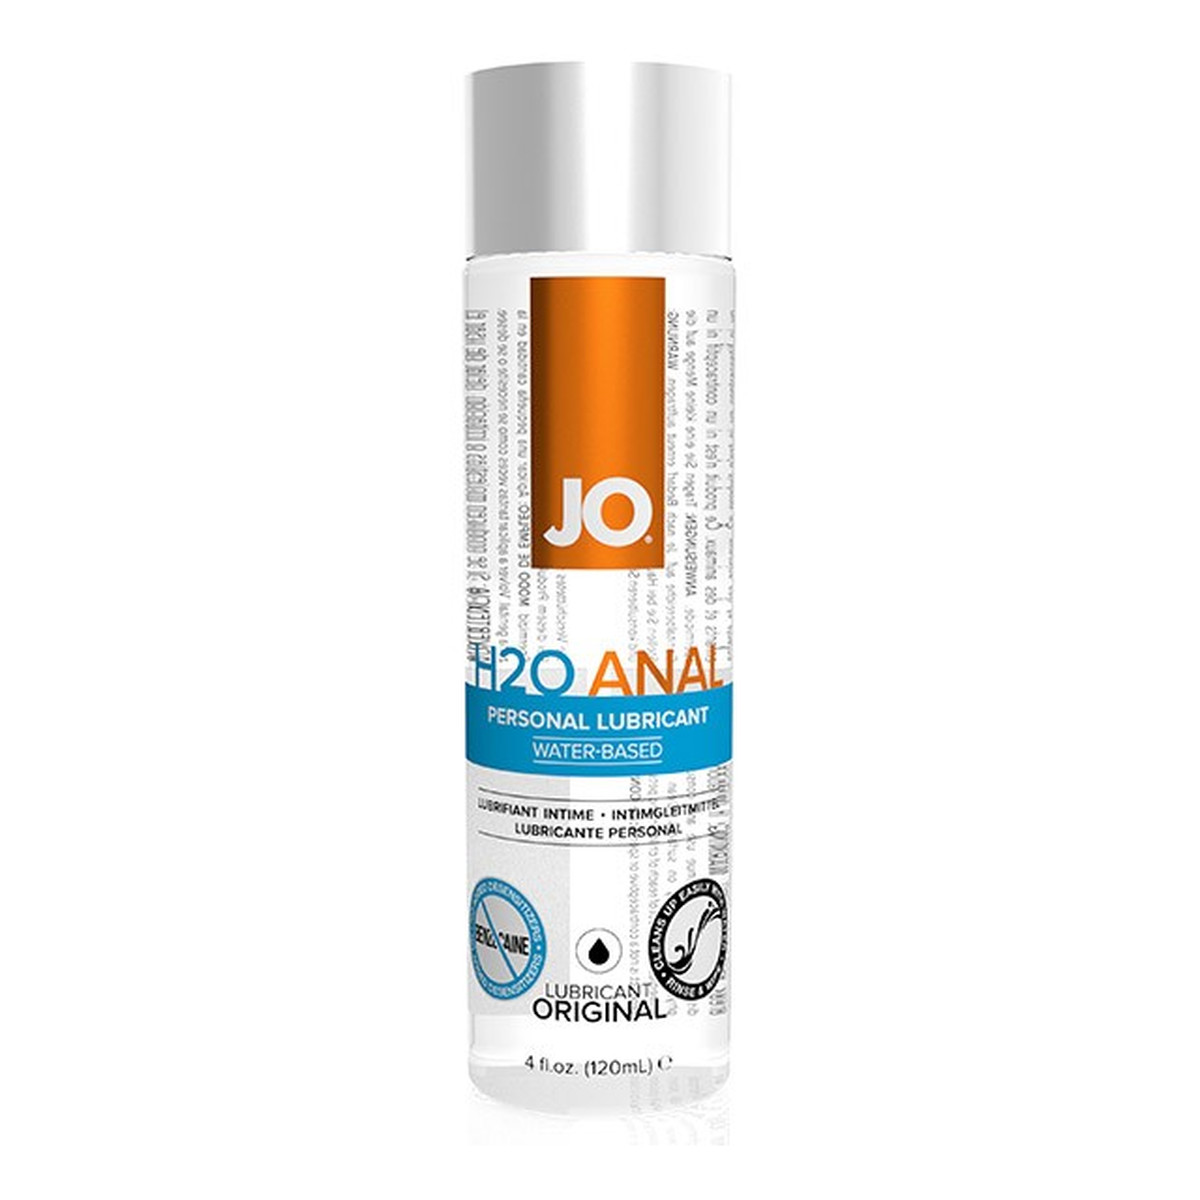 System Jo H2o anal personal lubricant lubrykant analny na bazie wody 120ml